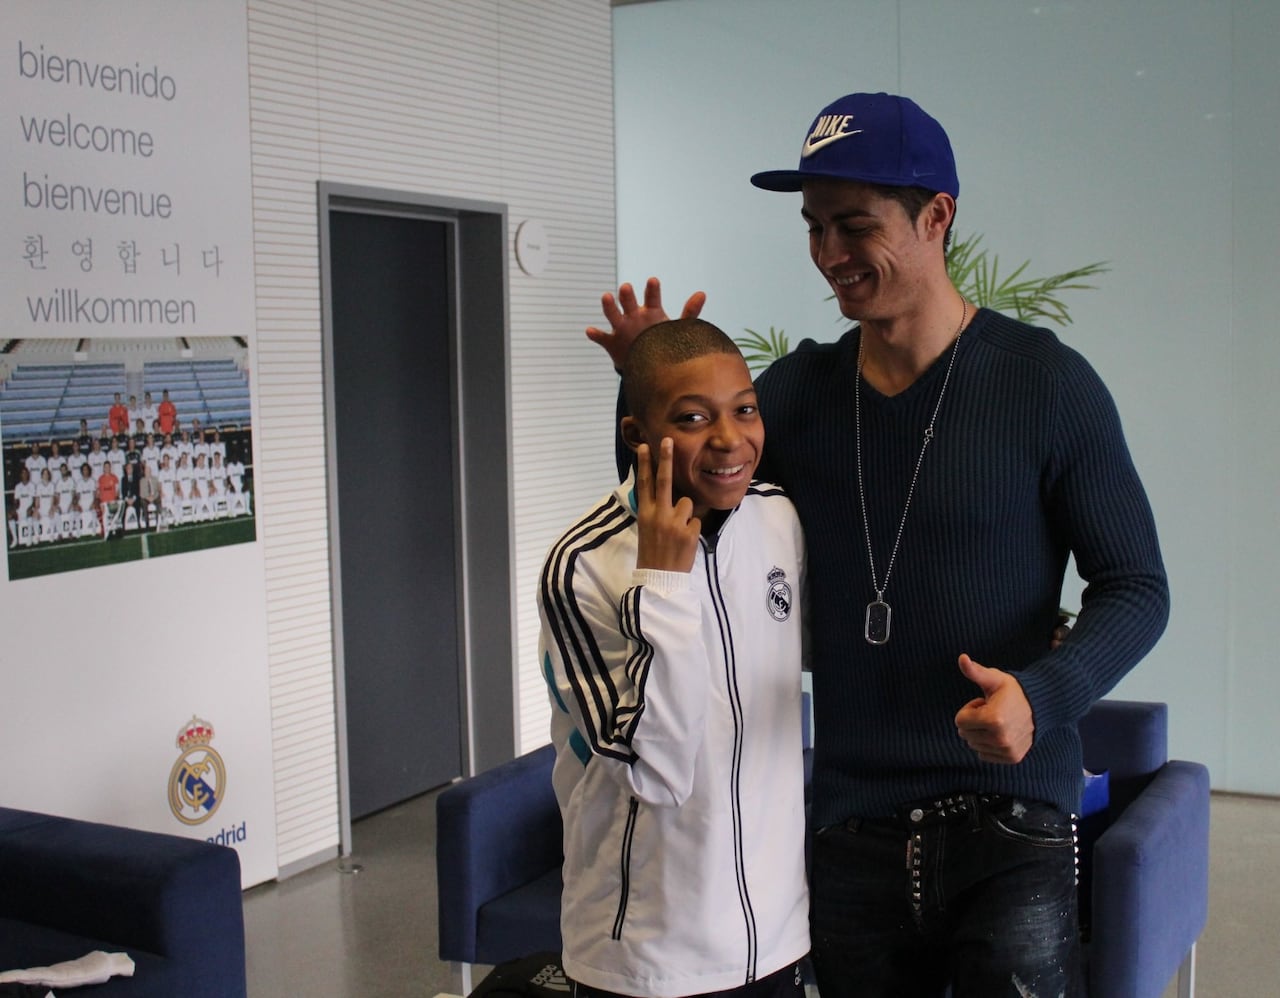 Kylian Mbappé publica inéditas fotos cuando era niño con prendas del Real Madrid. Incluso, acompañado de Cristiano Ronaldo.